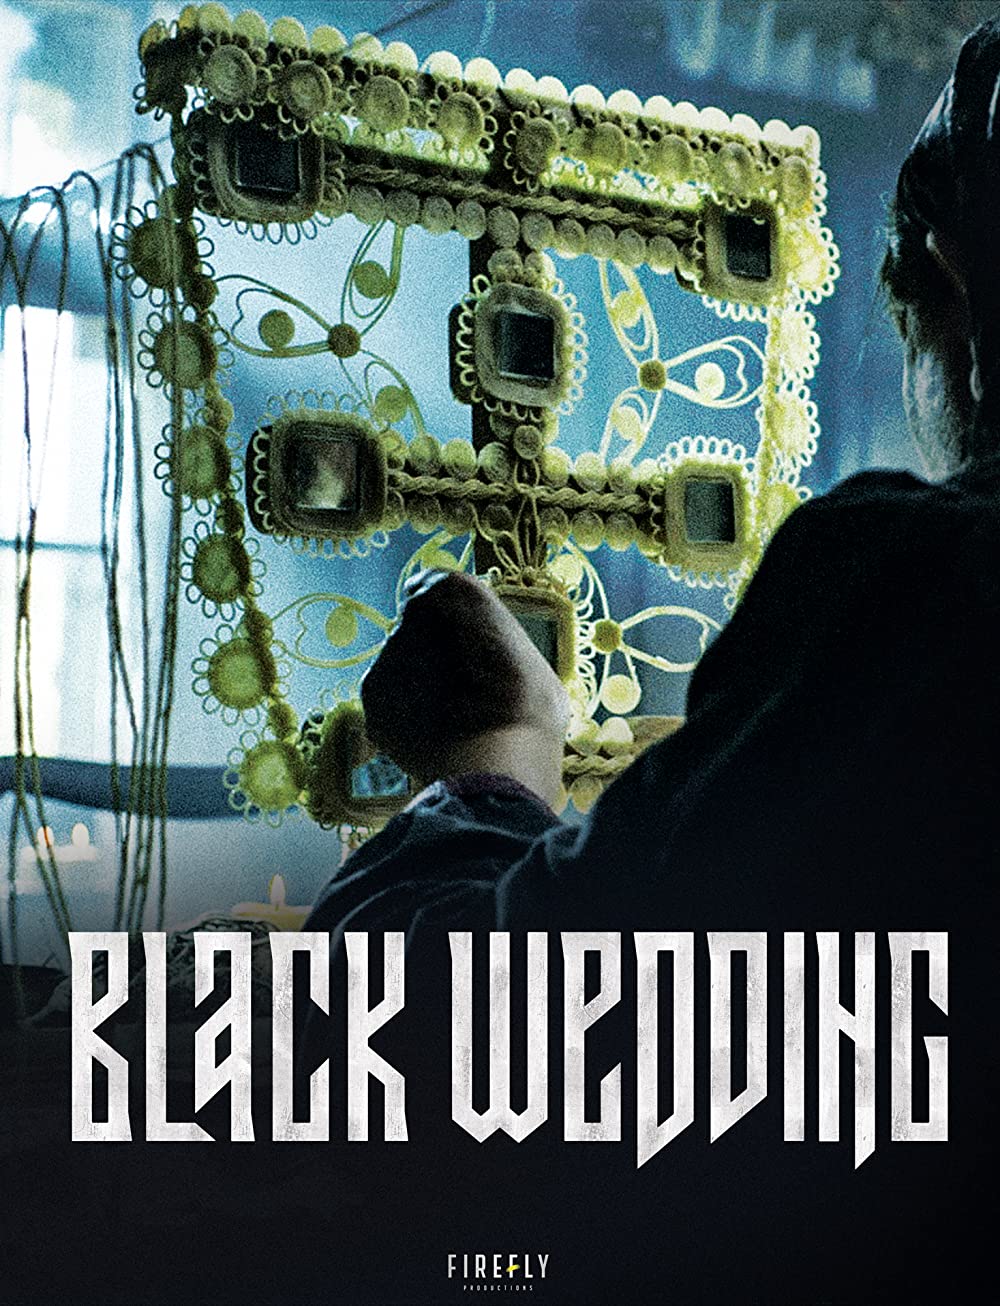 Filmbeschreibung zu Black Wedding